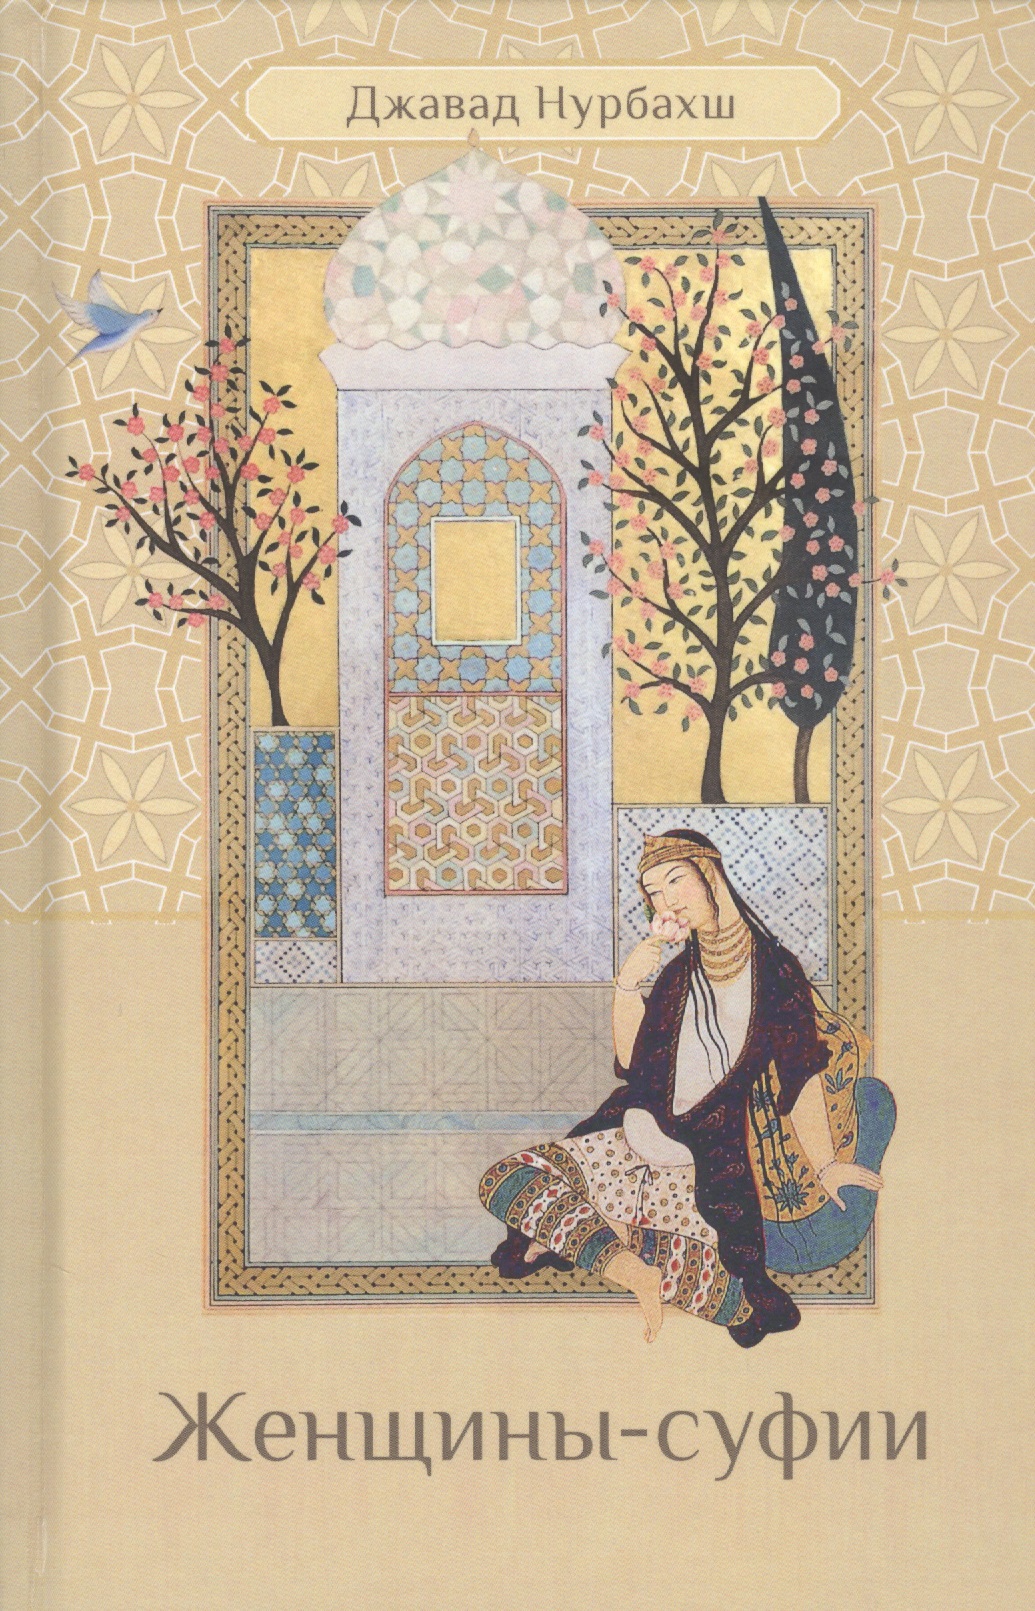 ротшильд дж дарующий свет биография д ра джавада нурбахша главы суфийского братства ниматуллахи Женщины-суфии